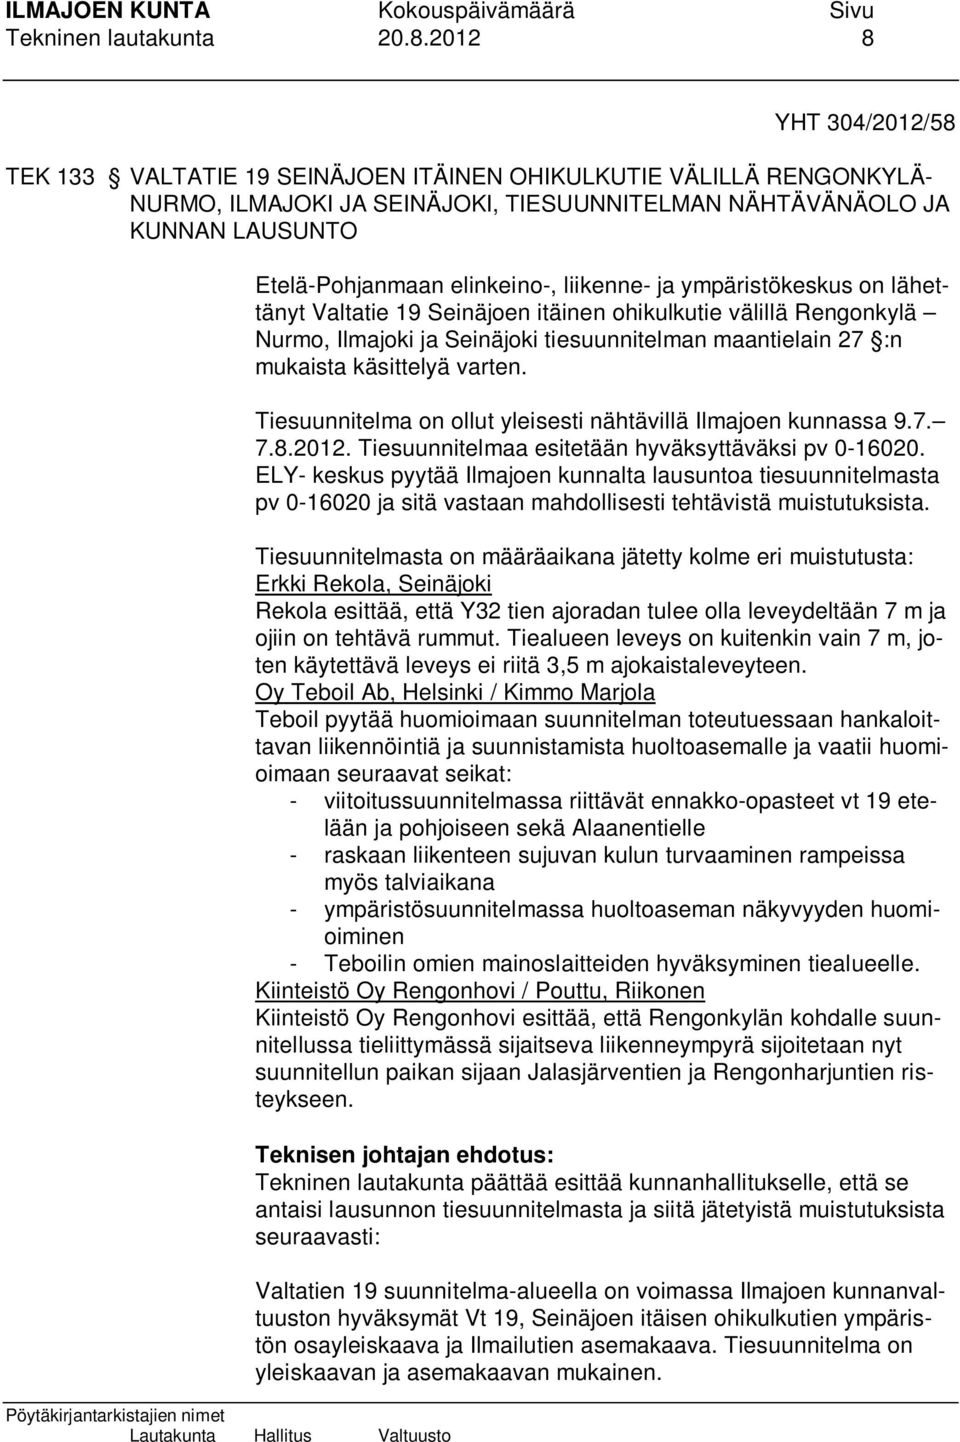 liikenne- ja ympäristökeskus on lähettänyt Valtatie 19 Seinäjoen itäinen ohikulkutie välillä Rengonkylä Nurmo, Ilmajoki ja Seinäjoki tiesuunnitelman maantielain 27 :n mukaista käsittelyä varten.